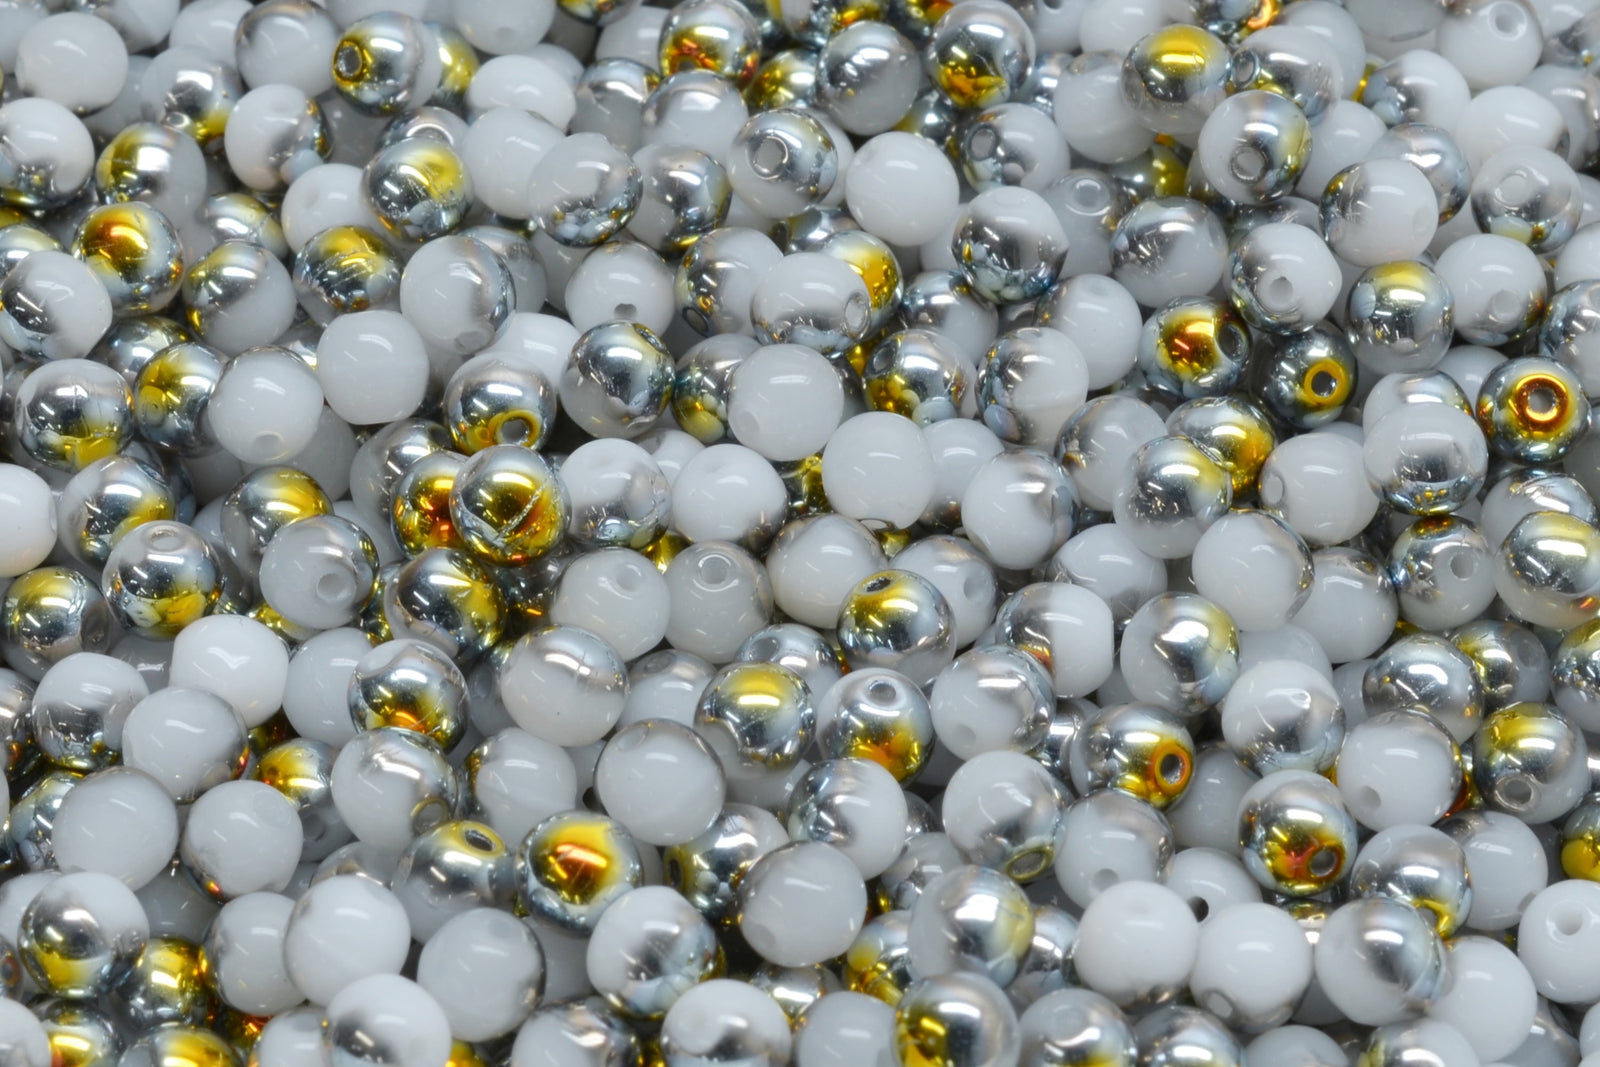 Czech Glass 4mm Round Druk Beads WHITE ALABASTER VELVET GREEN (Strand of 46)